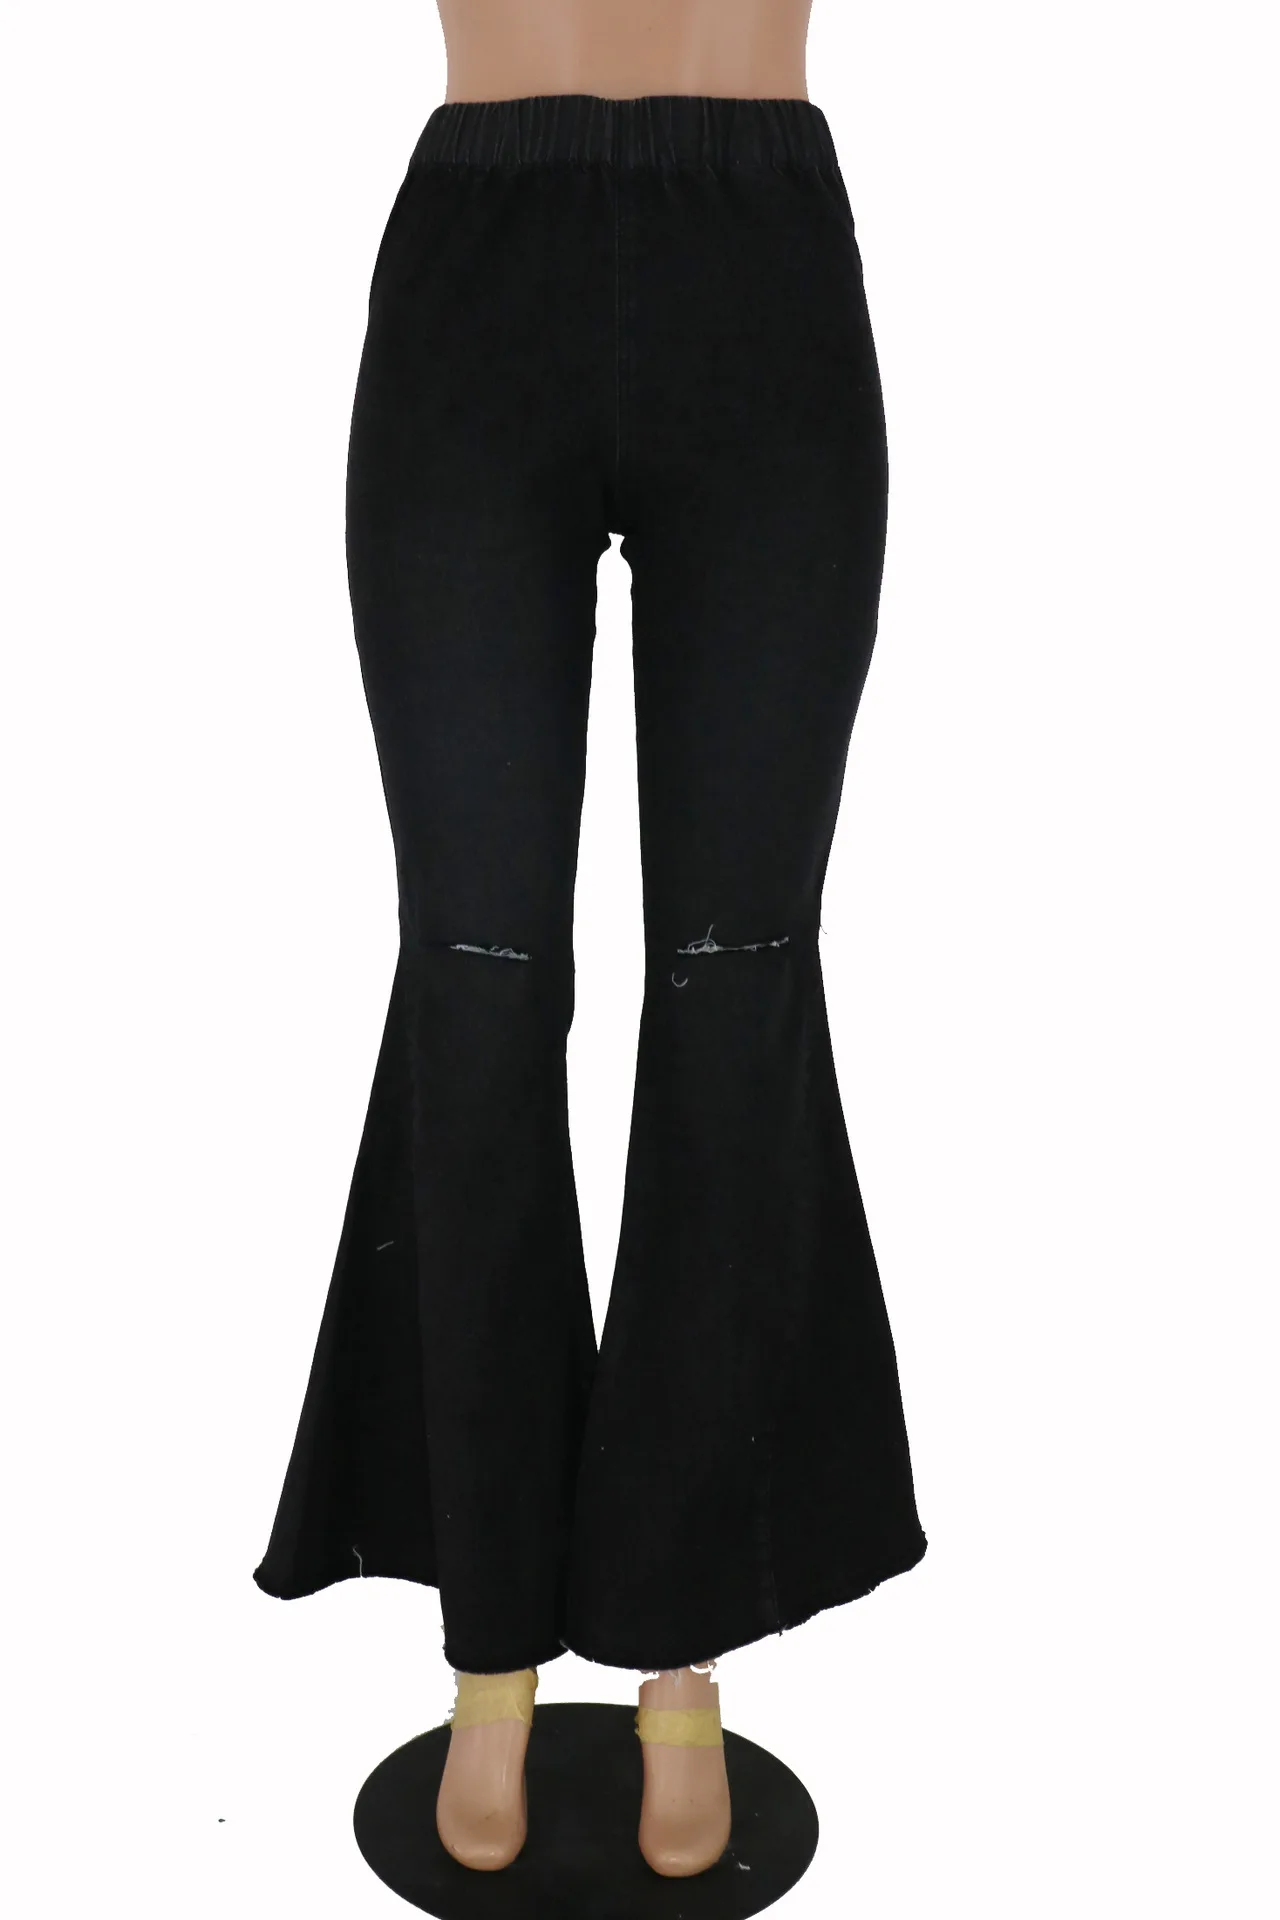 Женские Модные хлопковые рваные джинсы с высокой талией и эластичным поясом, свободные Джинсы бойфренда с карманами, расклешенные брюки для женщин, джинсы для мам S-2XL